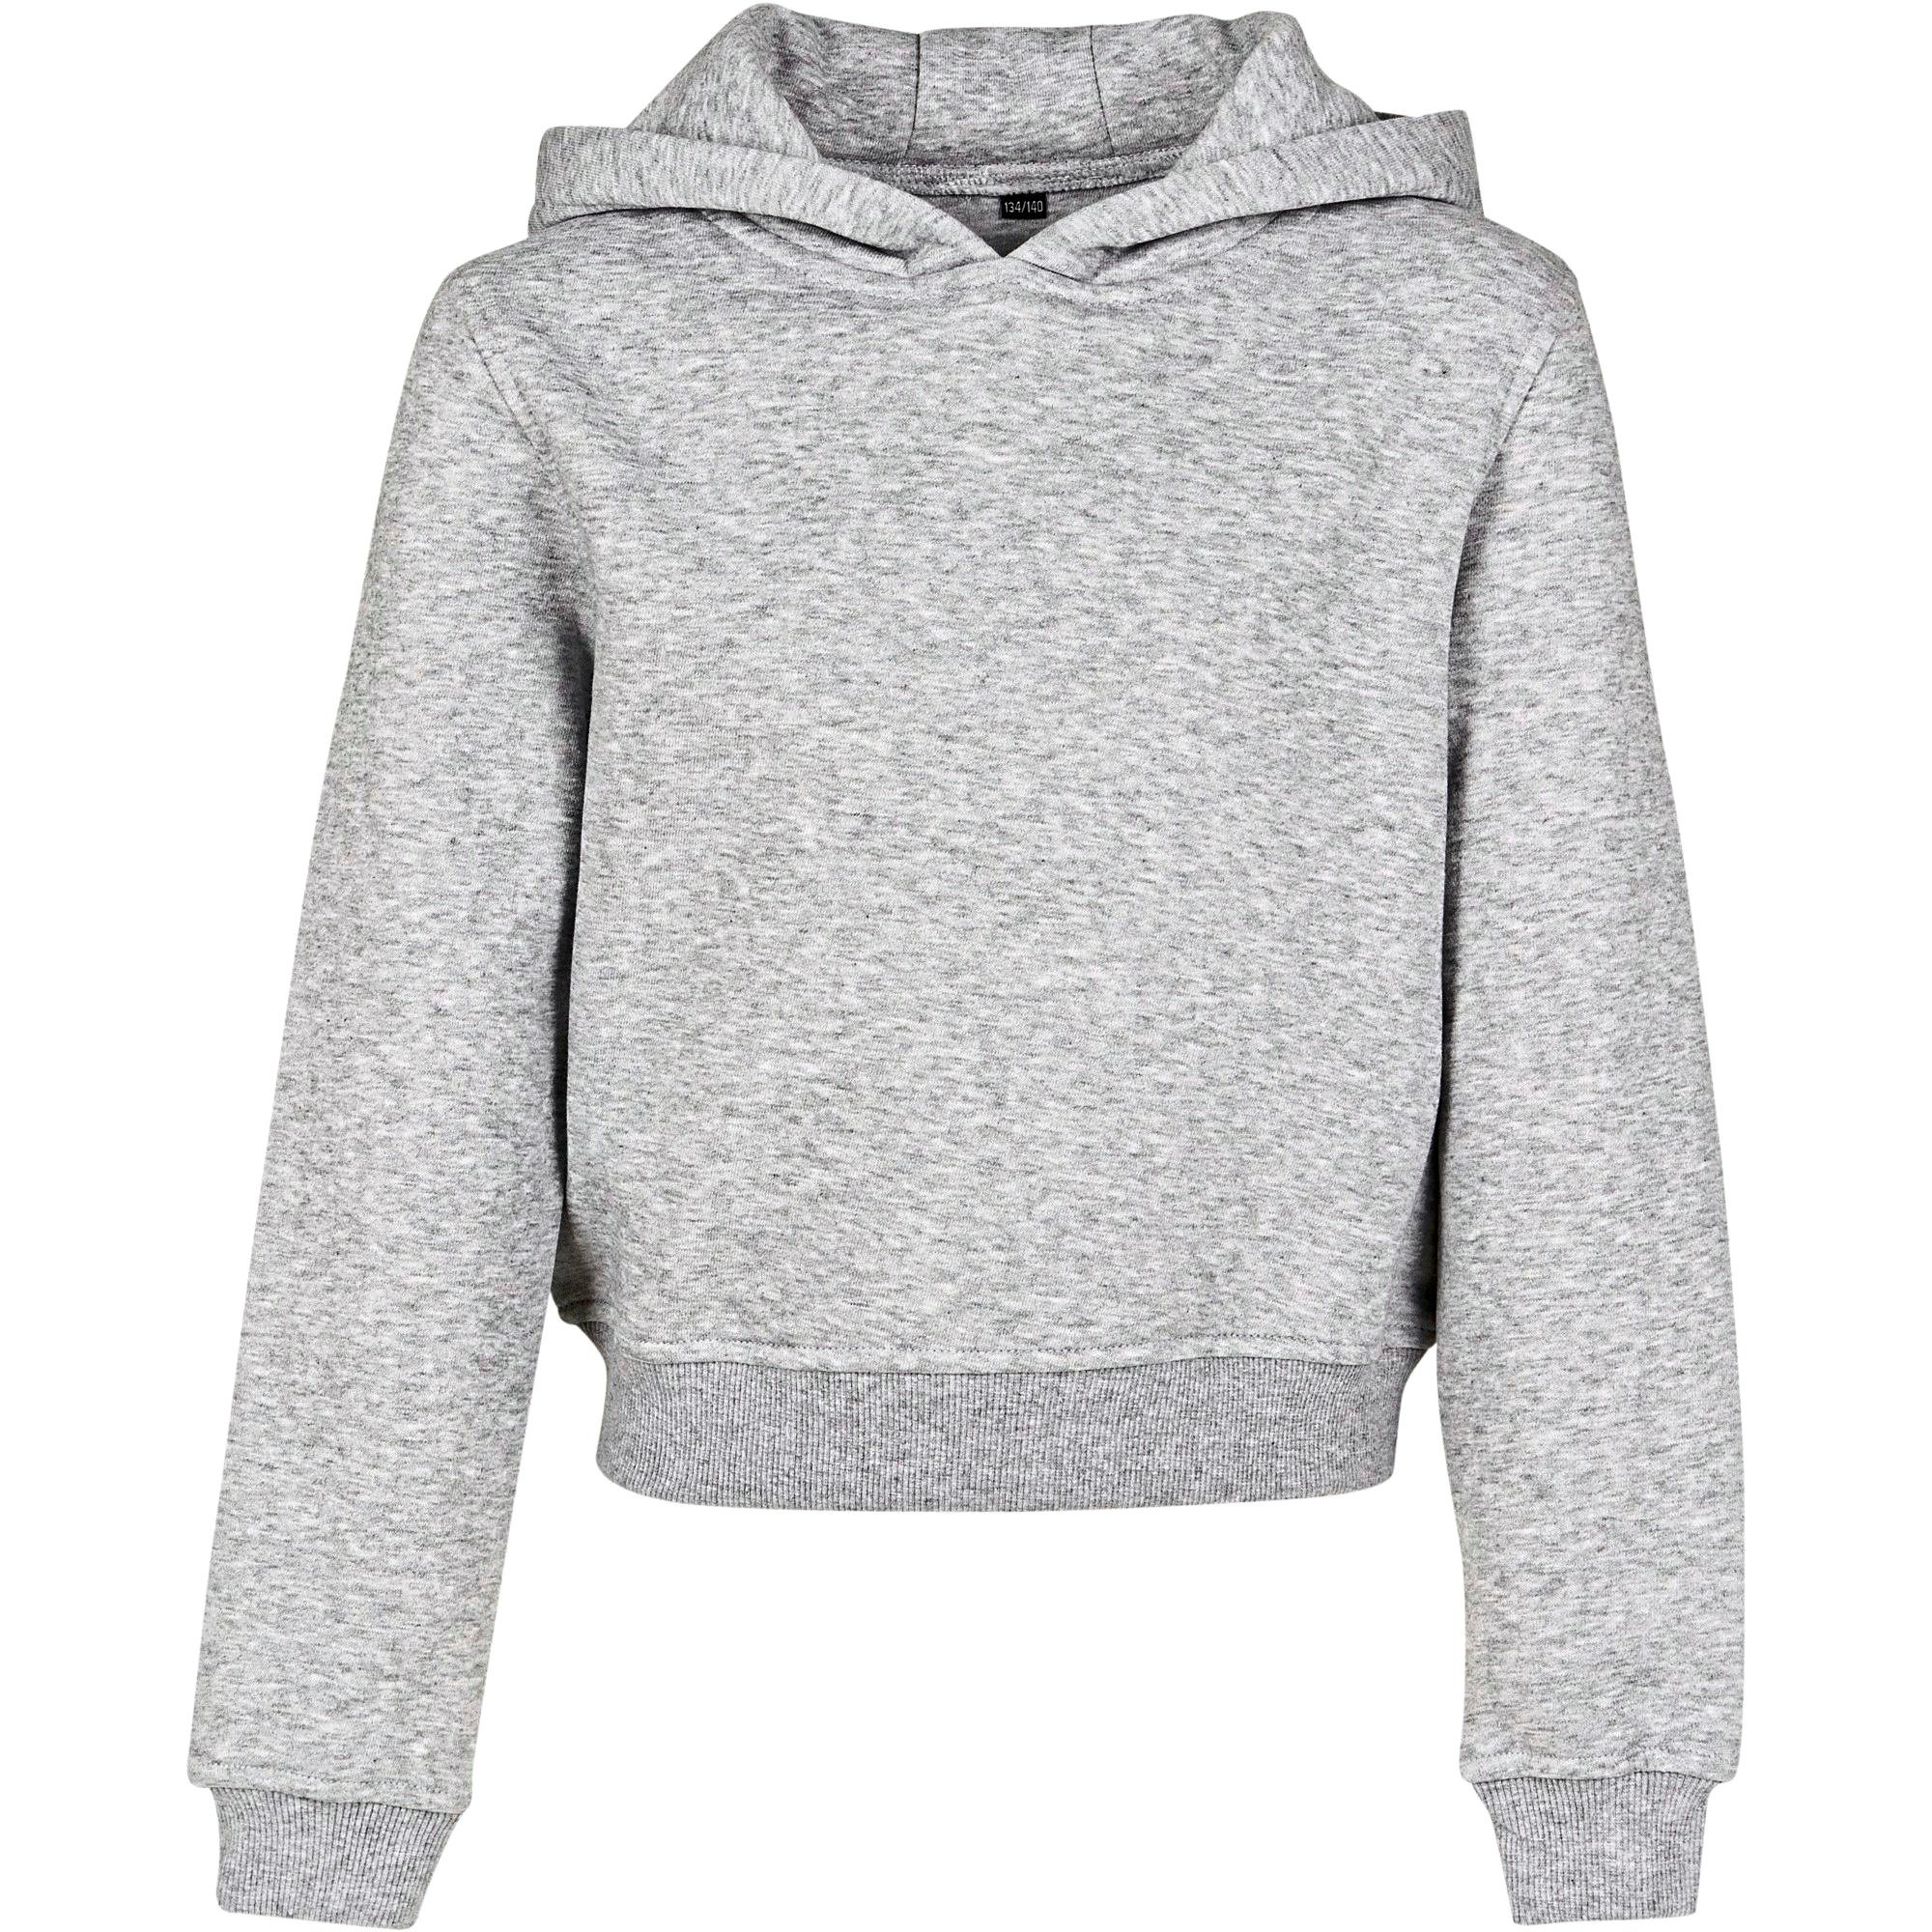 Hoody Cropped bauchfreier Brand Build Kapuzensweatshirt Mädchen Kapuzen-Sweater Grau Your Sweatshirt für / modischer Kapuzen bauchfrei